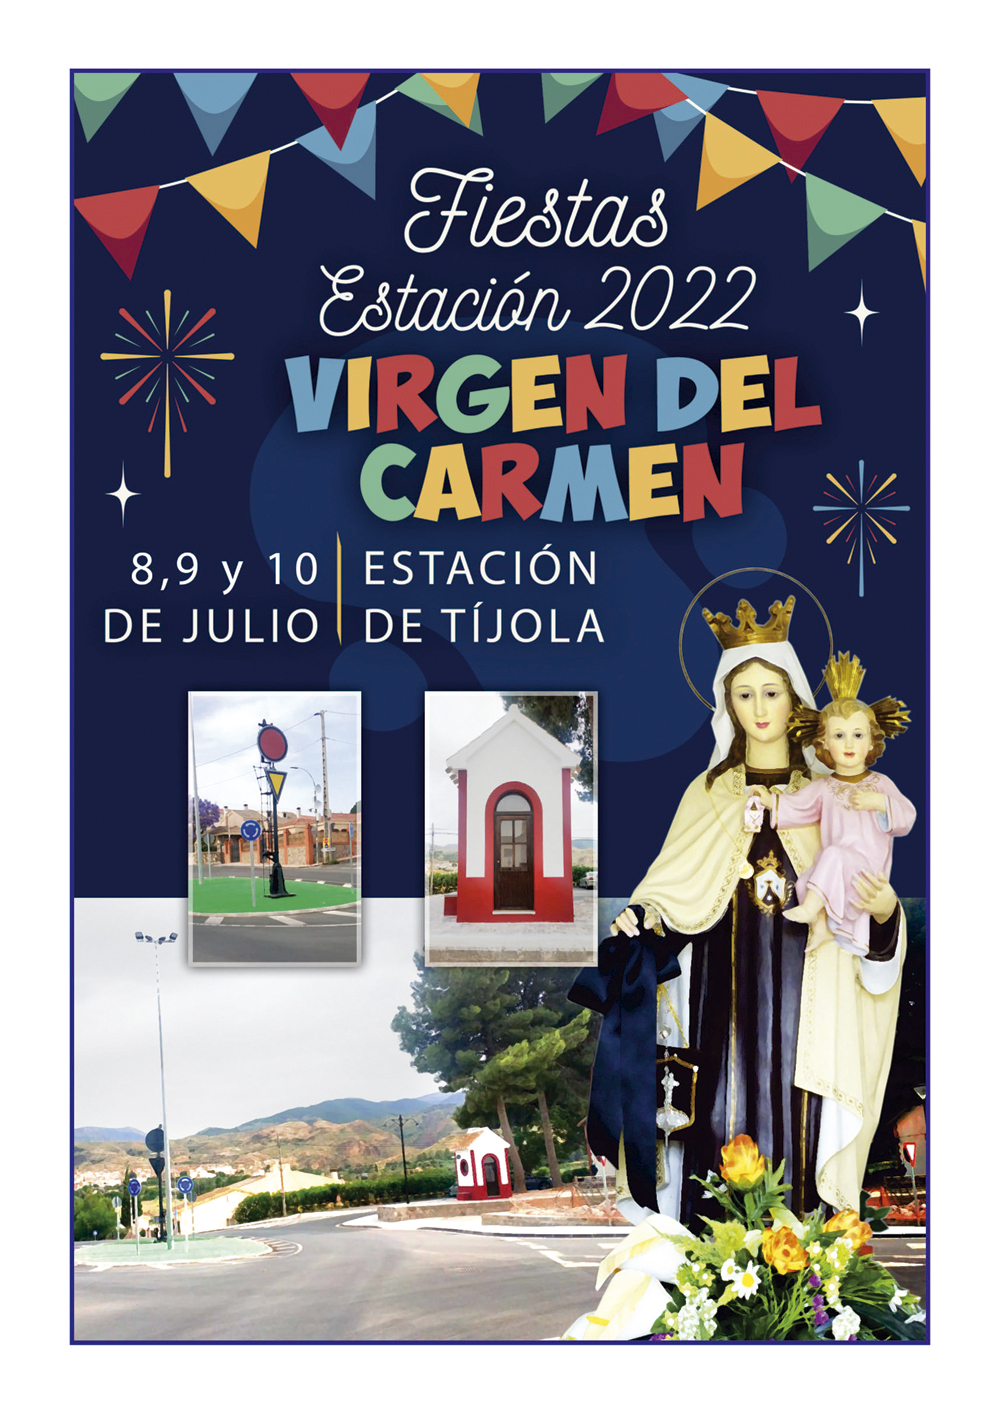 Imagen de la Portada del Libro de Fiestas de la Estación 2022. Imagen de la Virgen del Carmen al fondo.